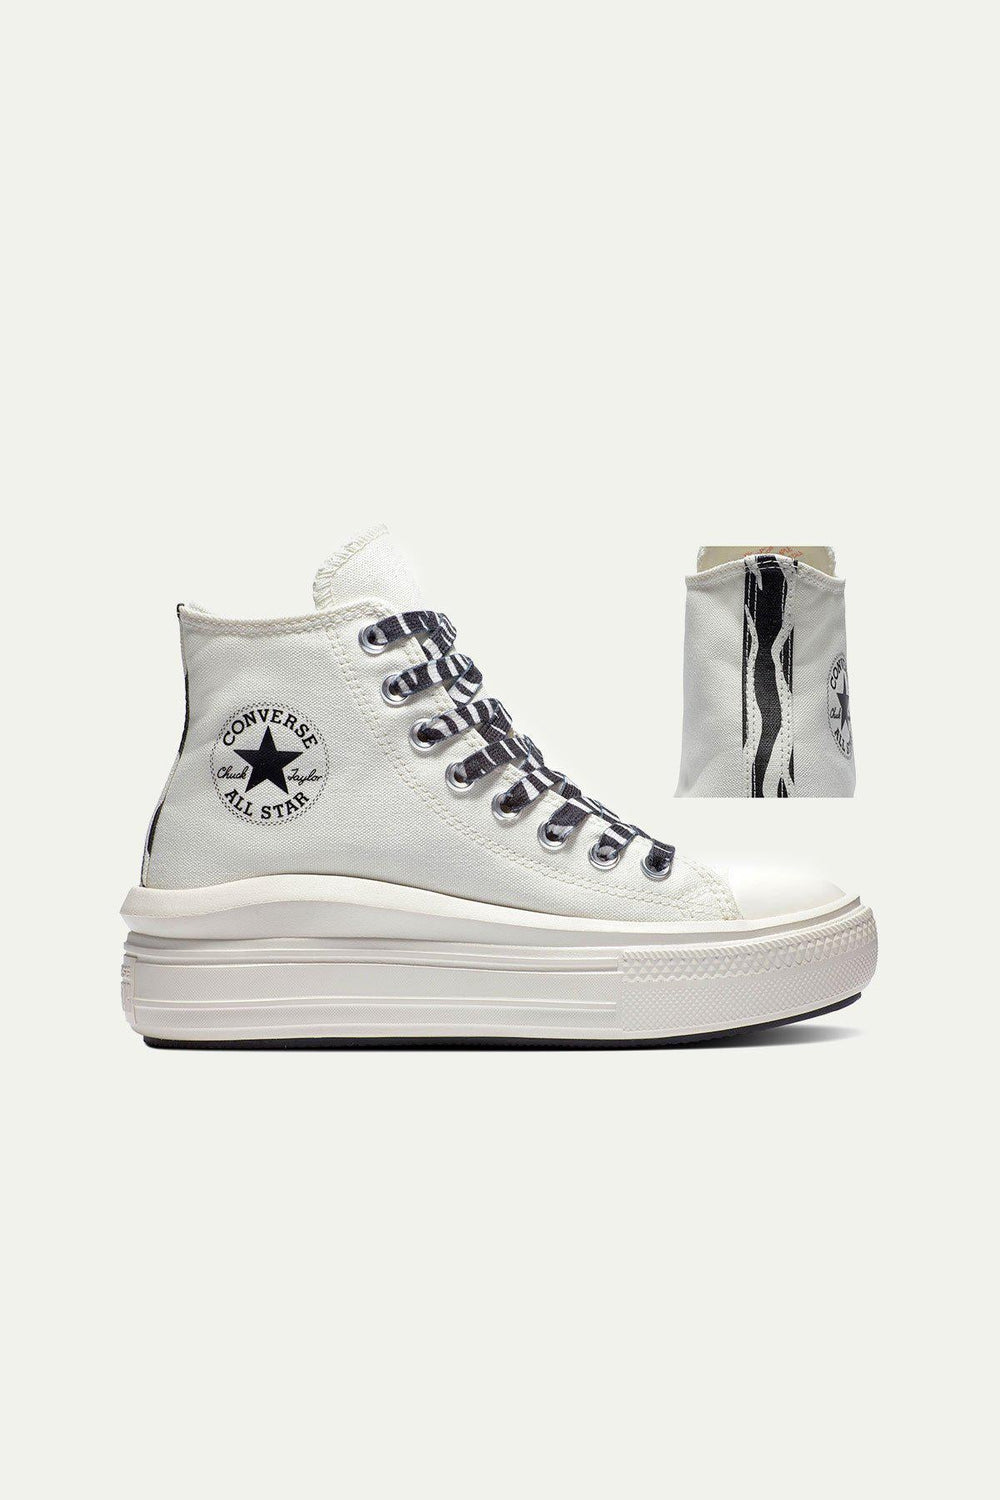 נעלי CHUCK TAYLOR גבוהות בצבע לבן - Converse